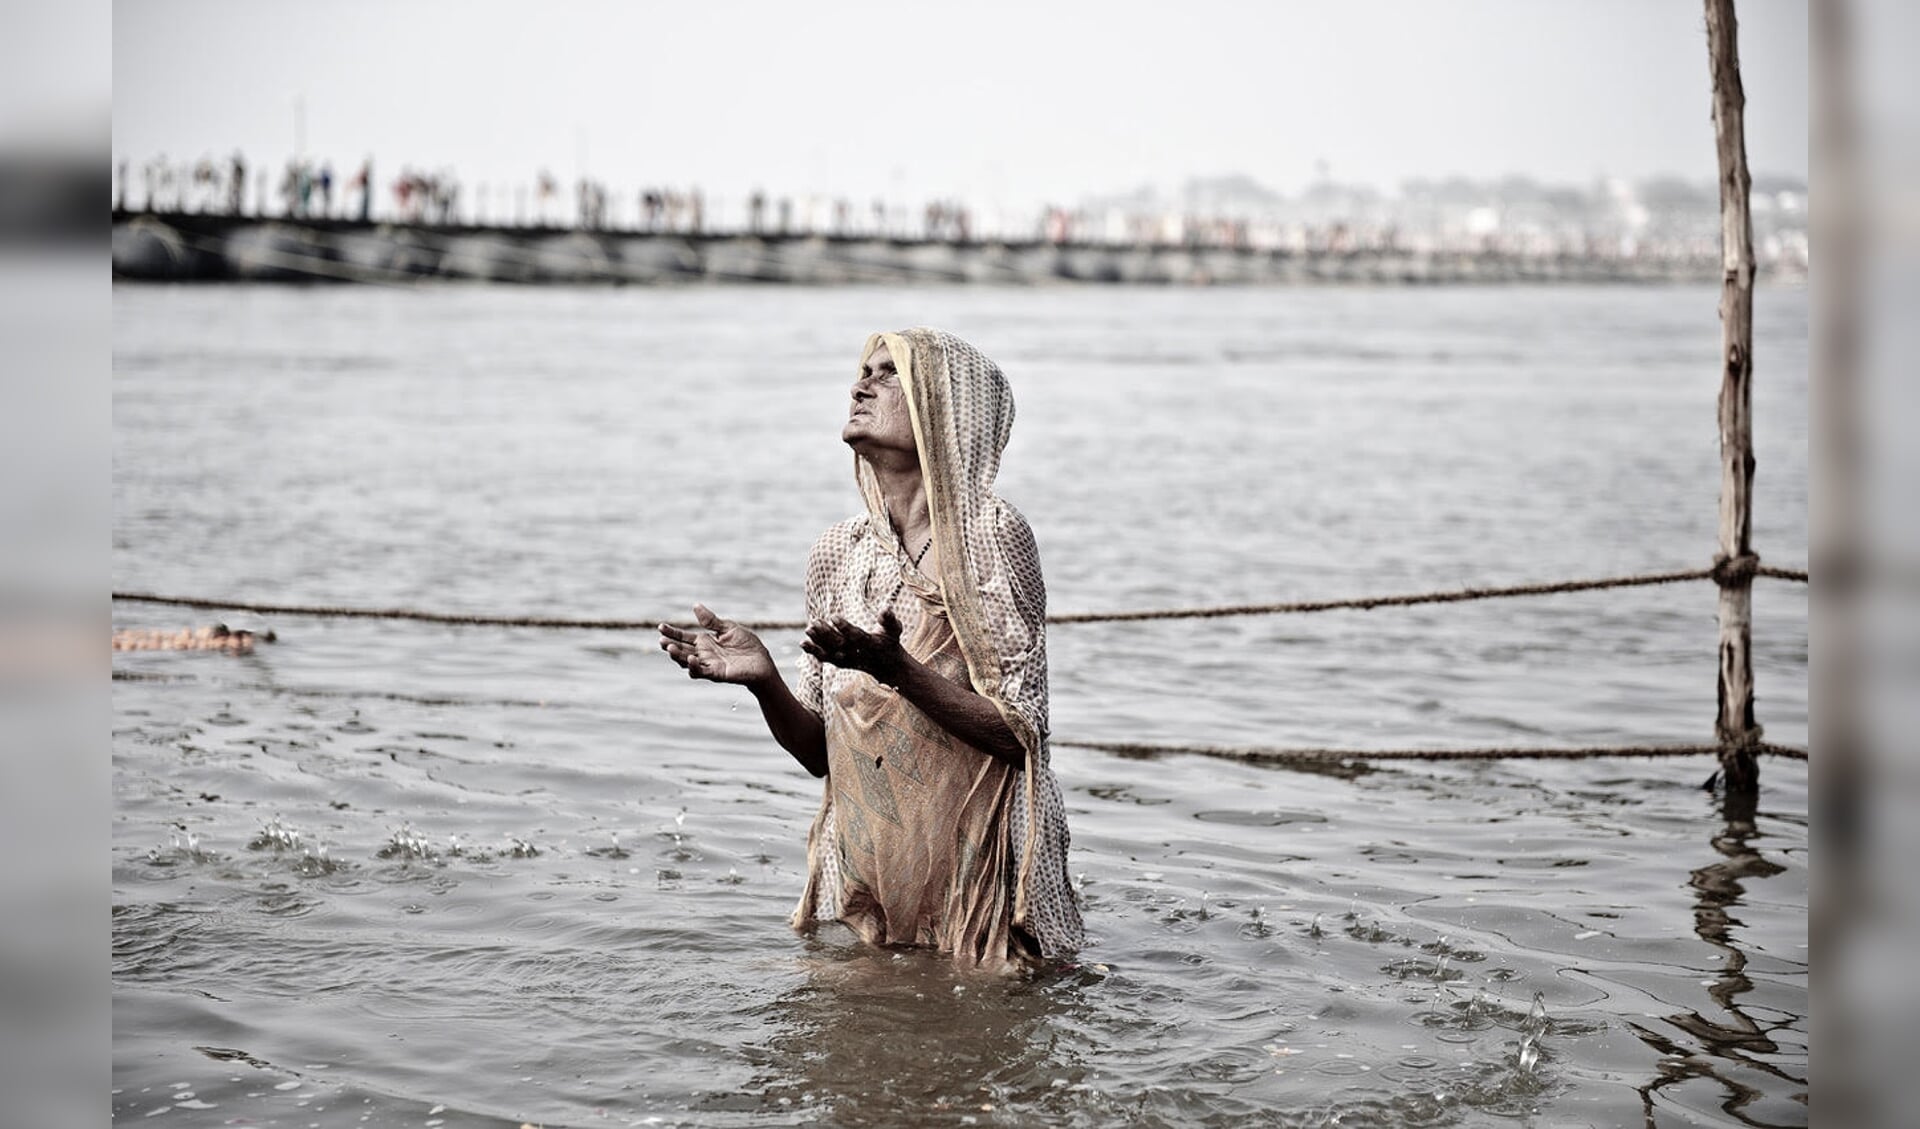 Voor het fotoboek maakte Kalmann een selectie van foto’s die ze tijdens het Indiase festival Kumbh Mela maakte.